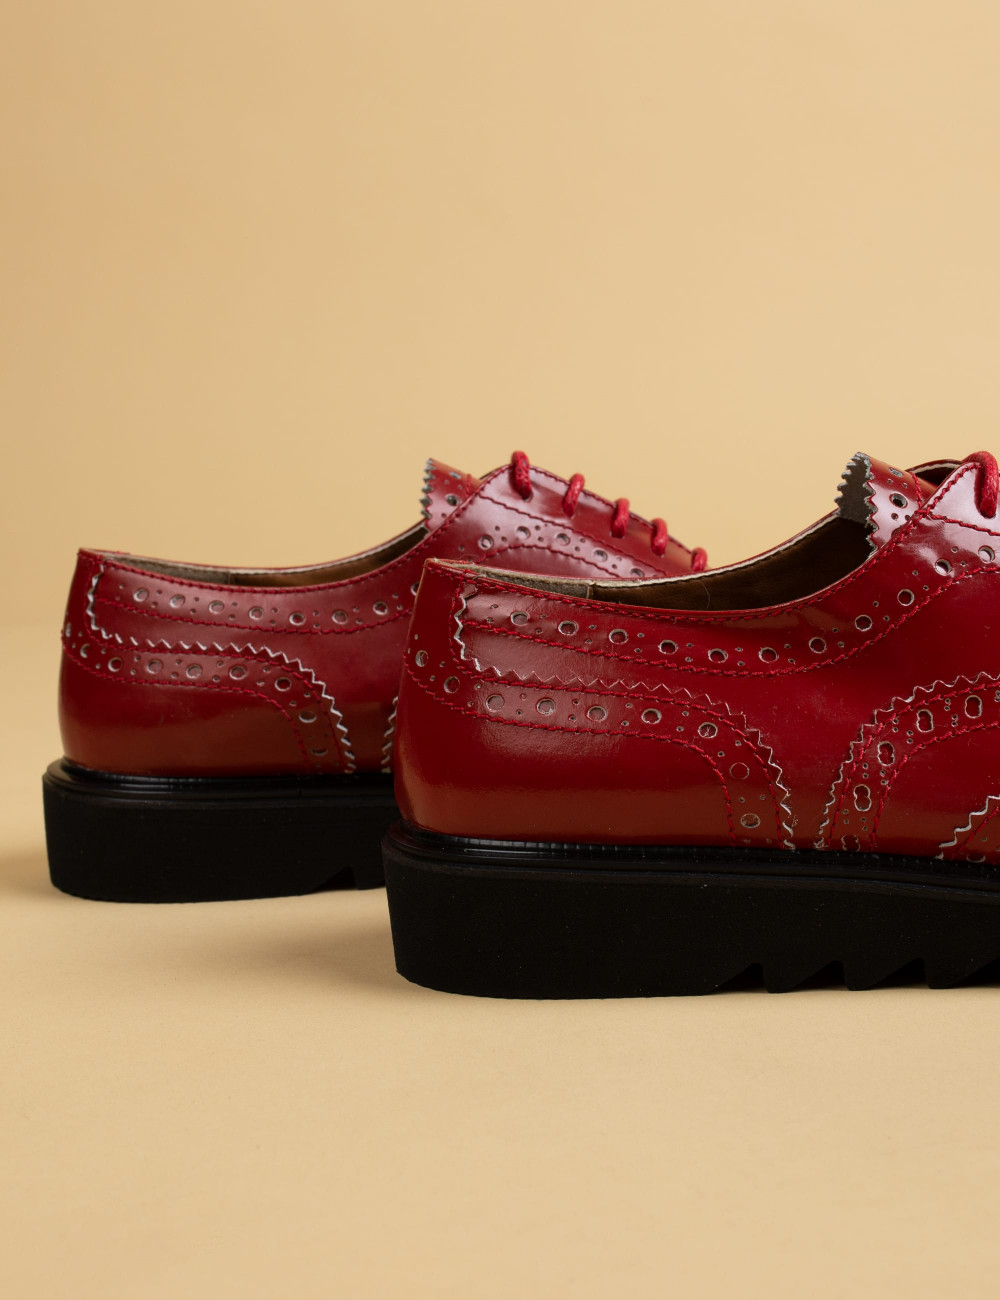 Hakiki Rugan Kırmızı Oxford Kadın Ayakkabı - 01418ZKRMP01